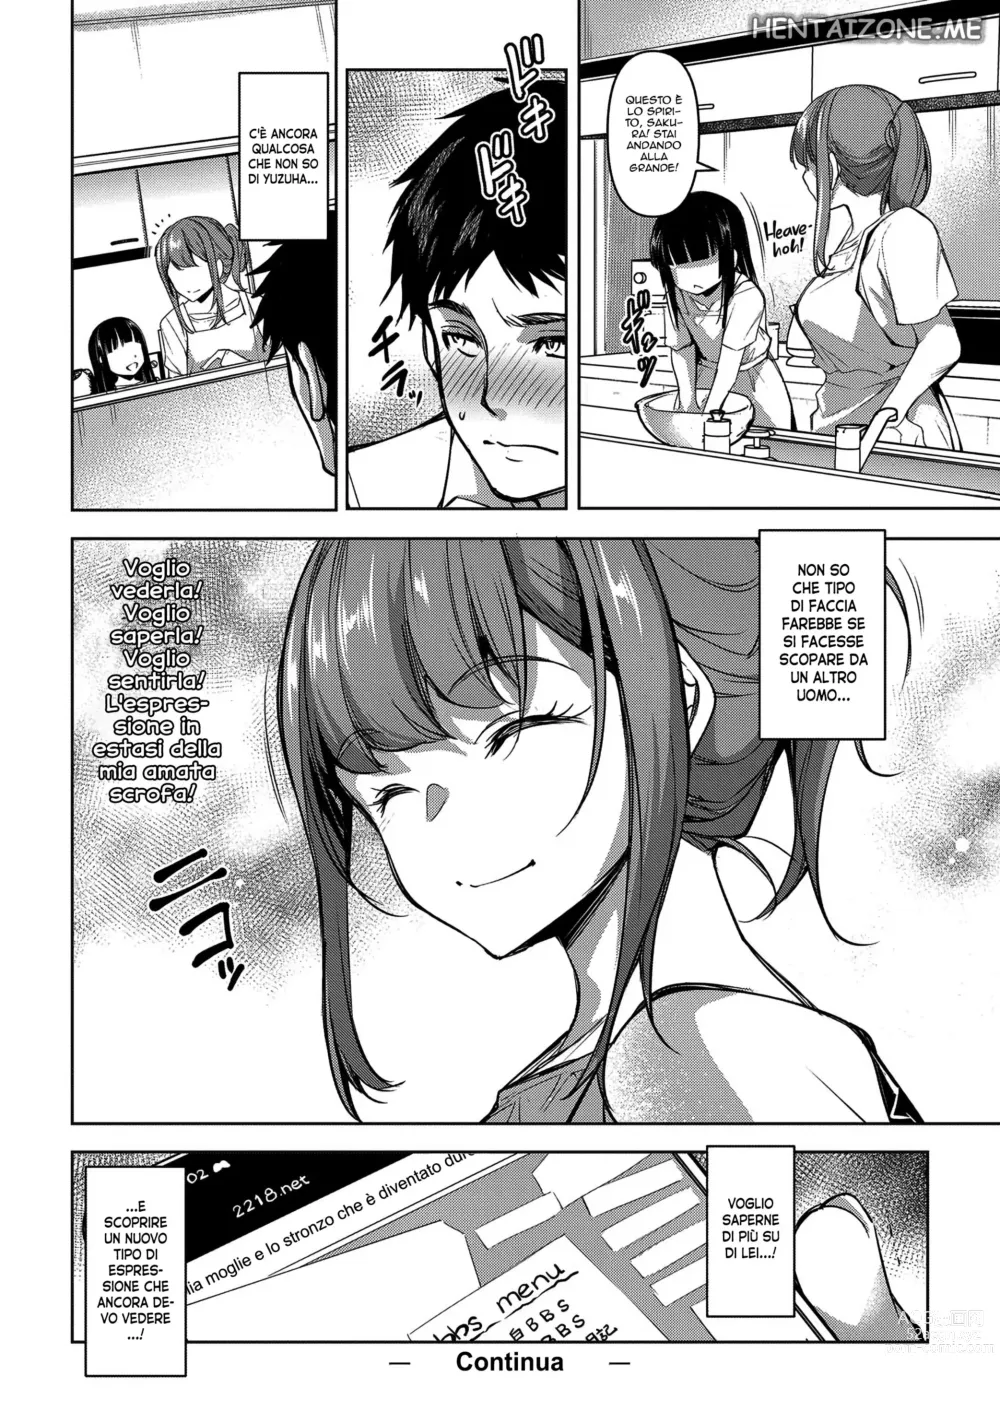 Page 29 of manga Una Fantastica Storia sull'Amore Coniugale